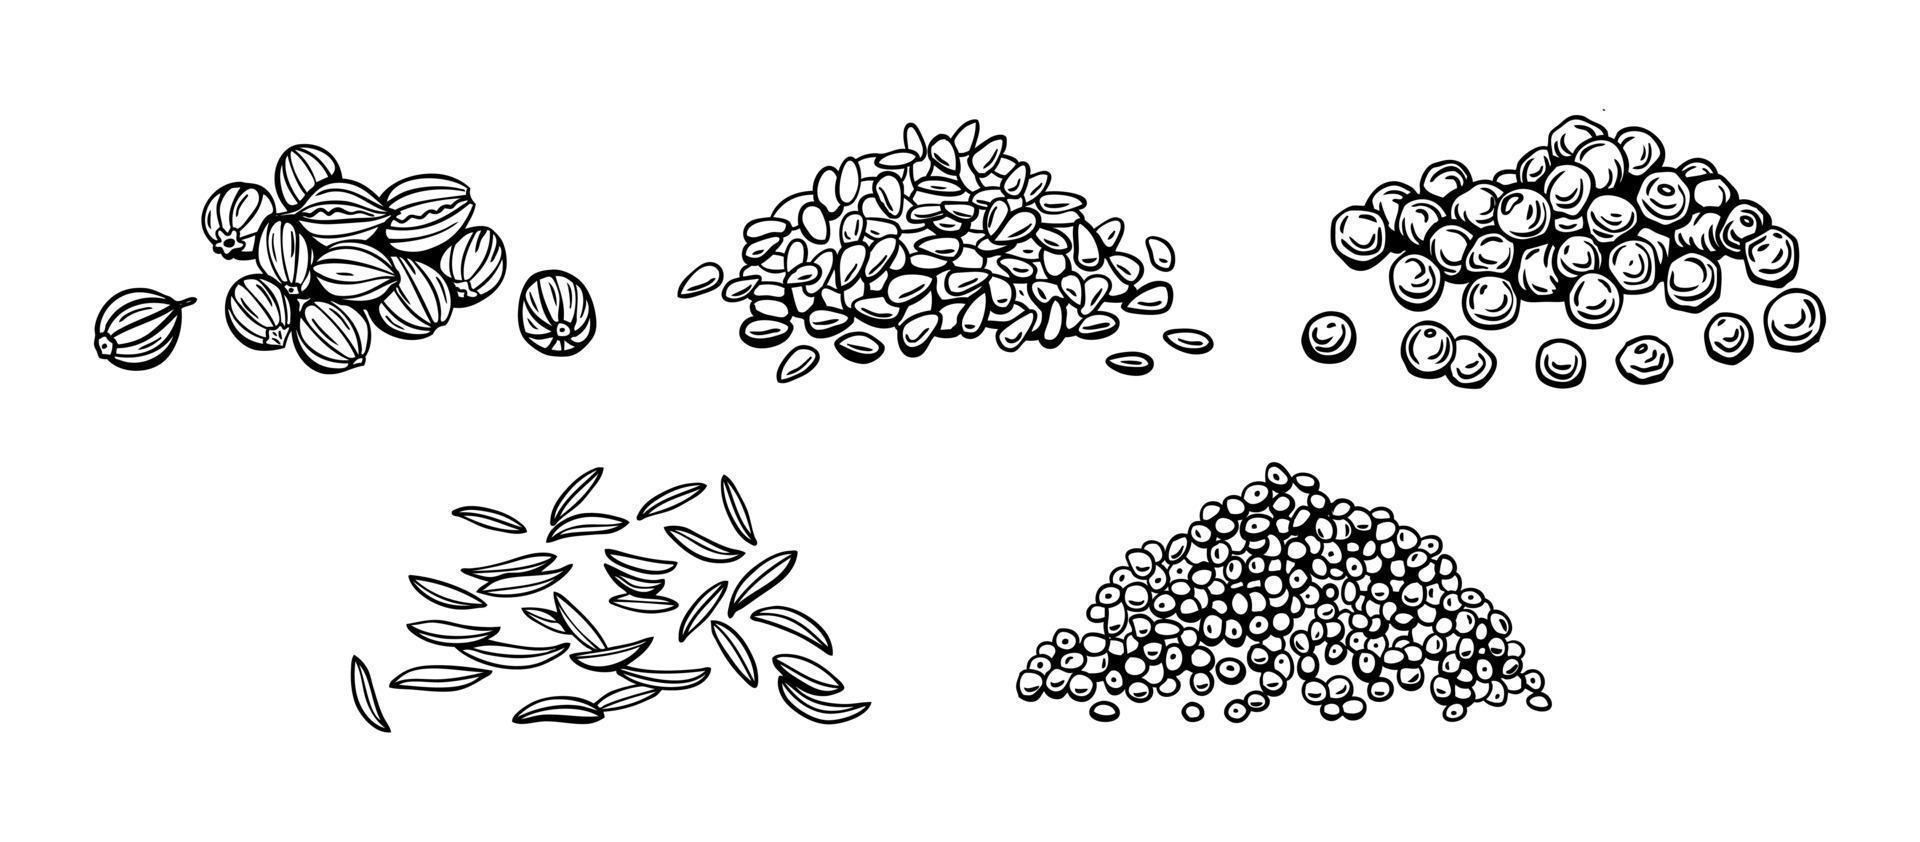 semillas de condimentos y especias, sésamo, pimienta, semillas de amapola, comino, cilantro. ilustración vectorial en estilo de garabato manual vector